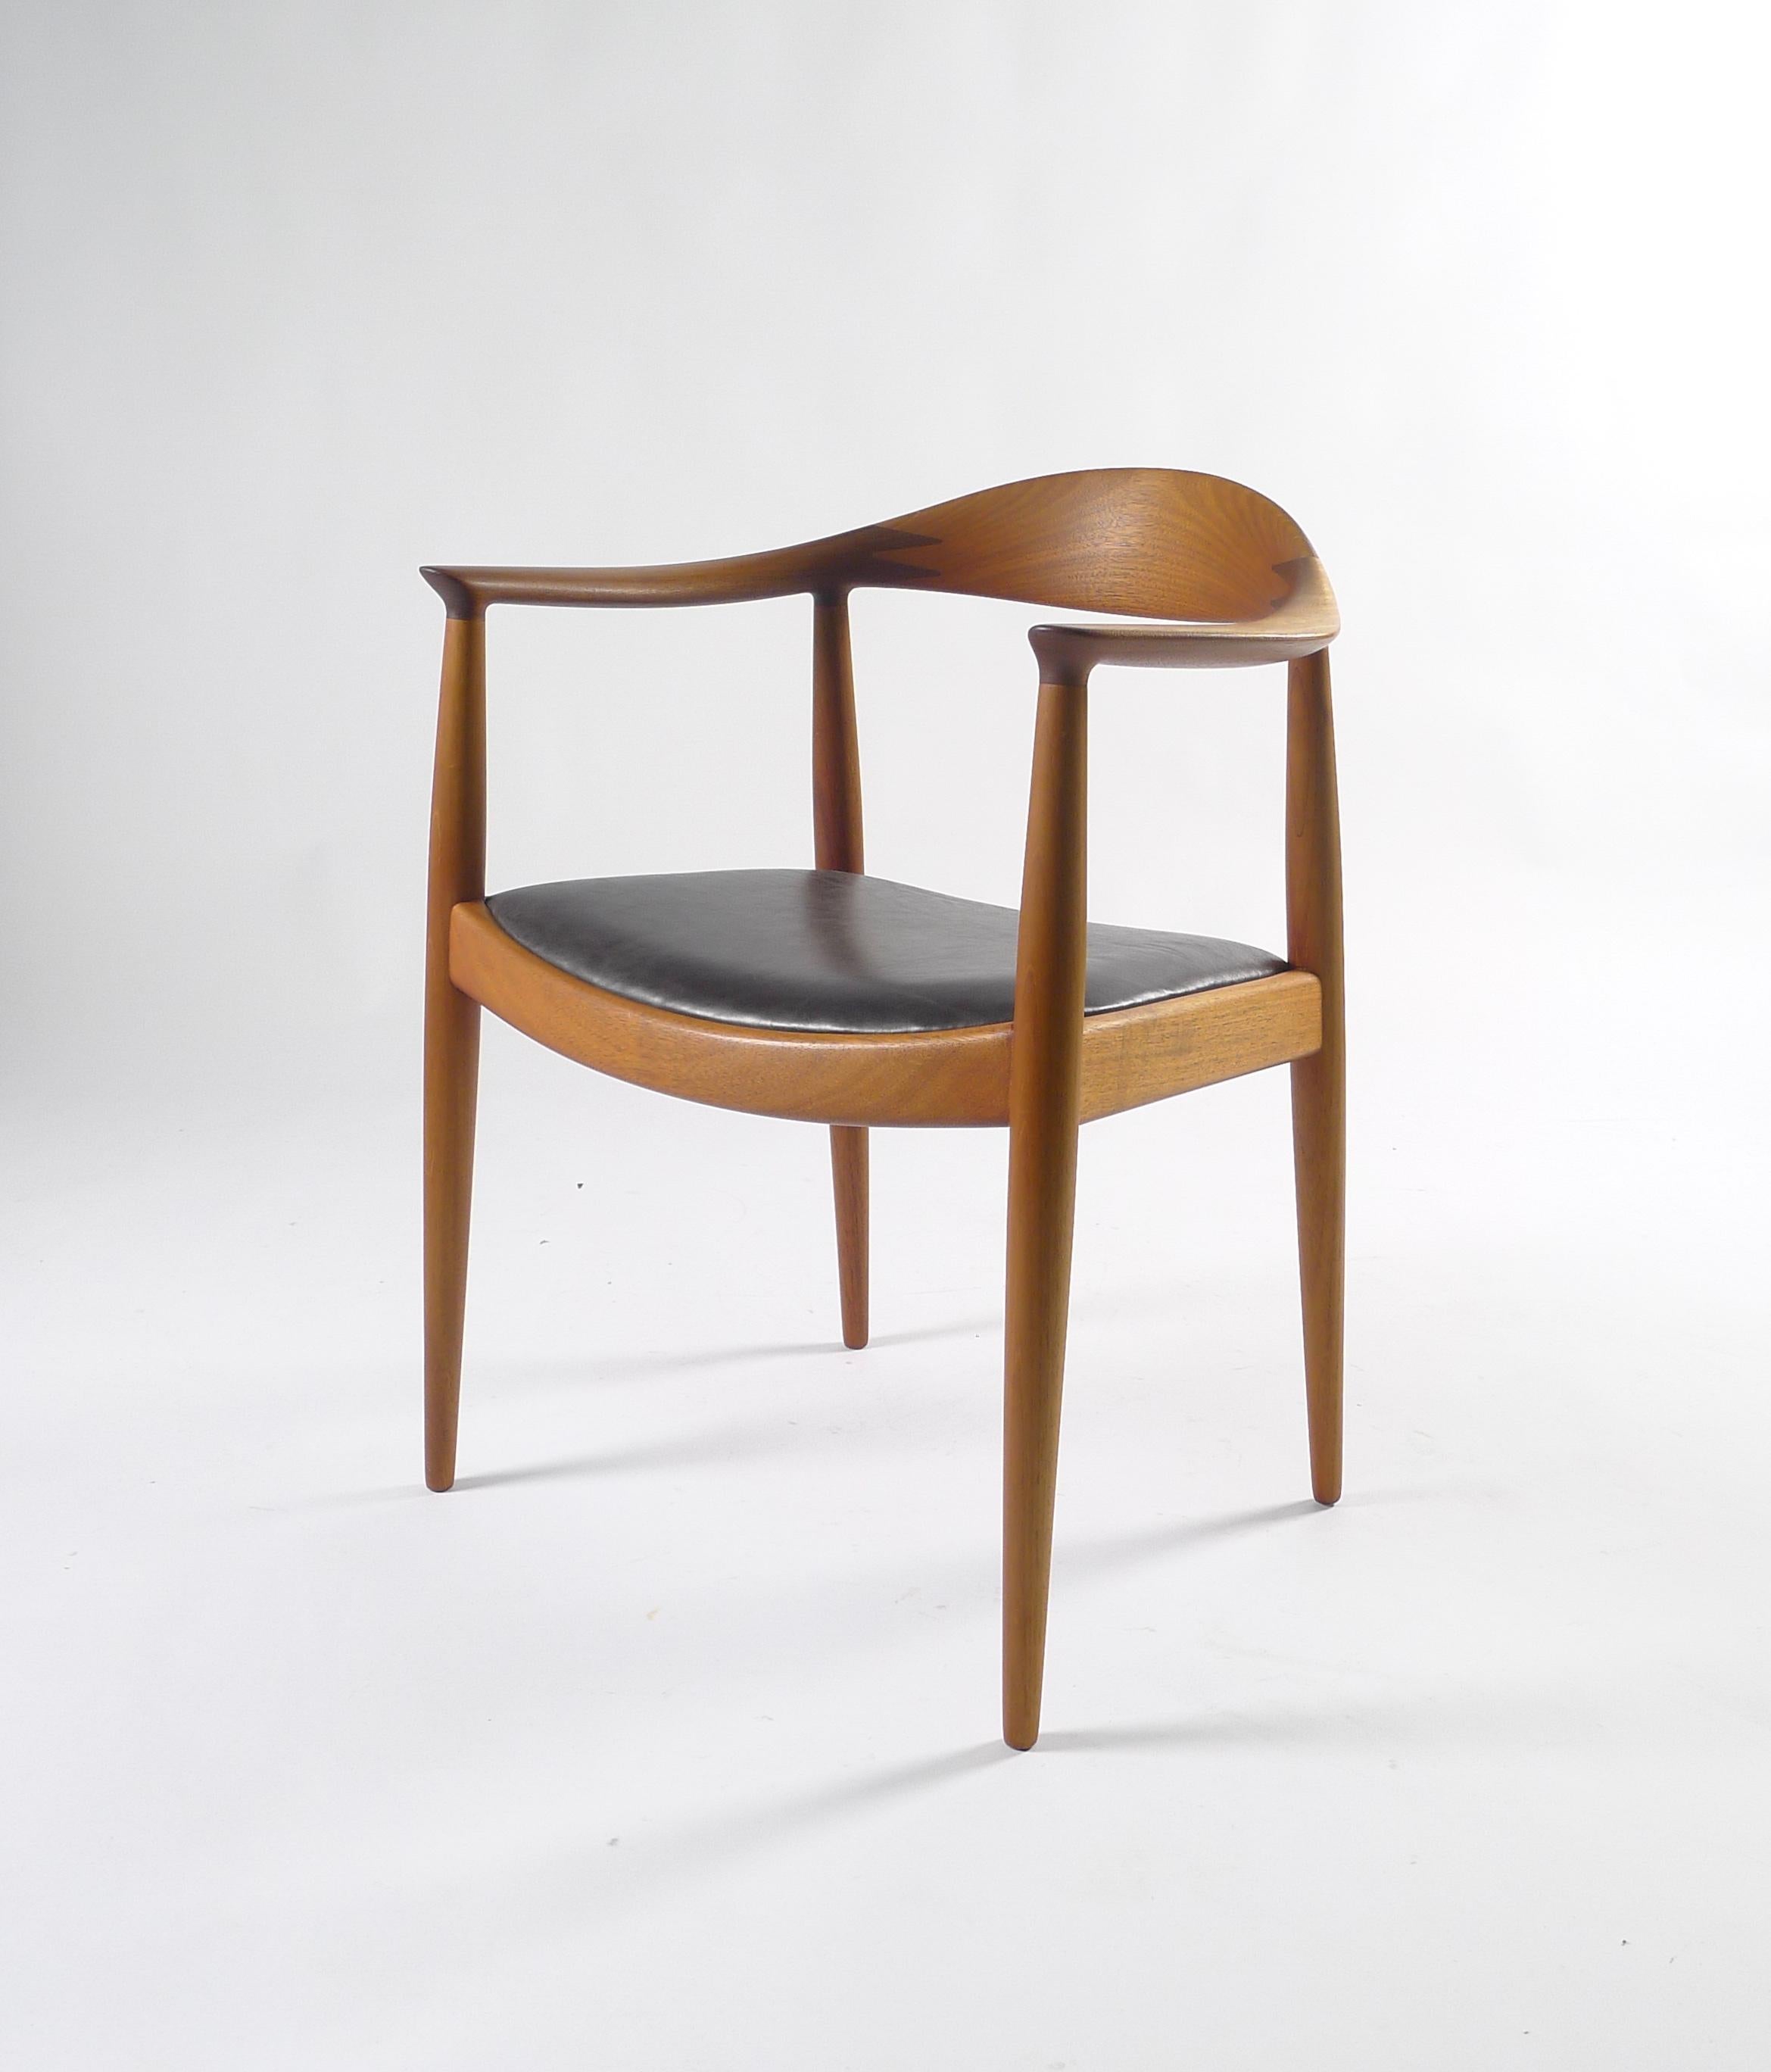 Hans J Wegner, der Stuhl oder runder Stuhl, Modell JH503, Entwurf 1949, hergestellt von Johannes Hansen, Dänemark

Gestell aus Teakholz mit geschwungener Rückenlehne, gepolsterter Sitz aus schwarzem Leder

Stempelmarke JOHANNES